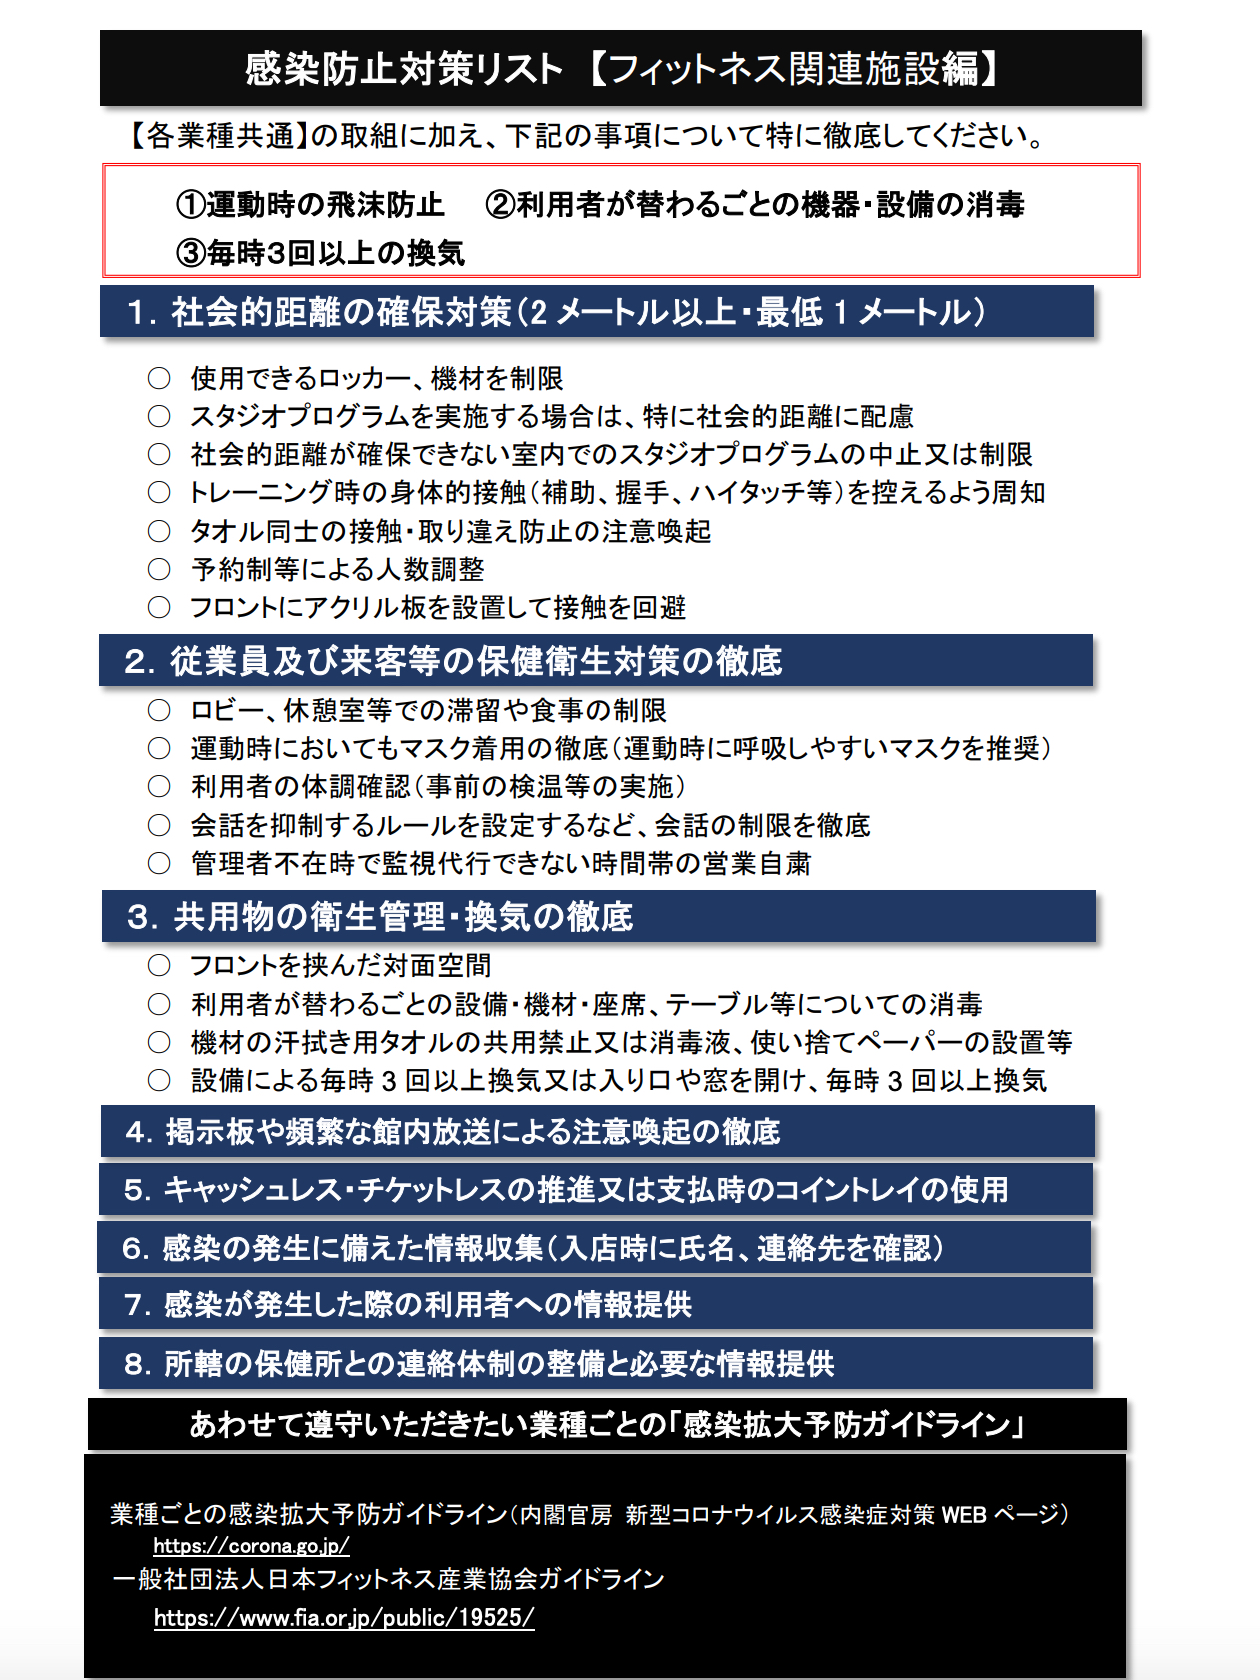 愛知県感染防止対策リスト.jpg